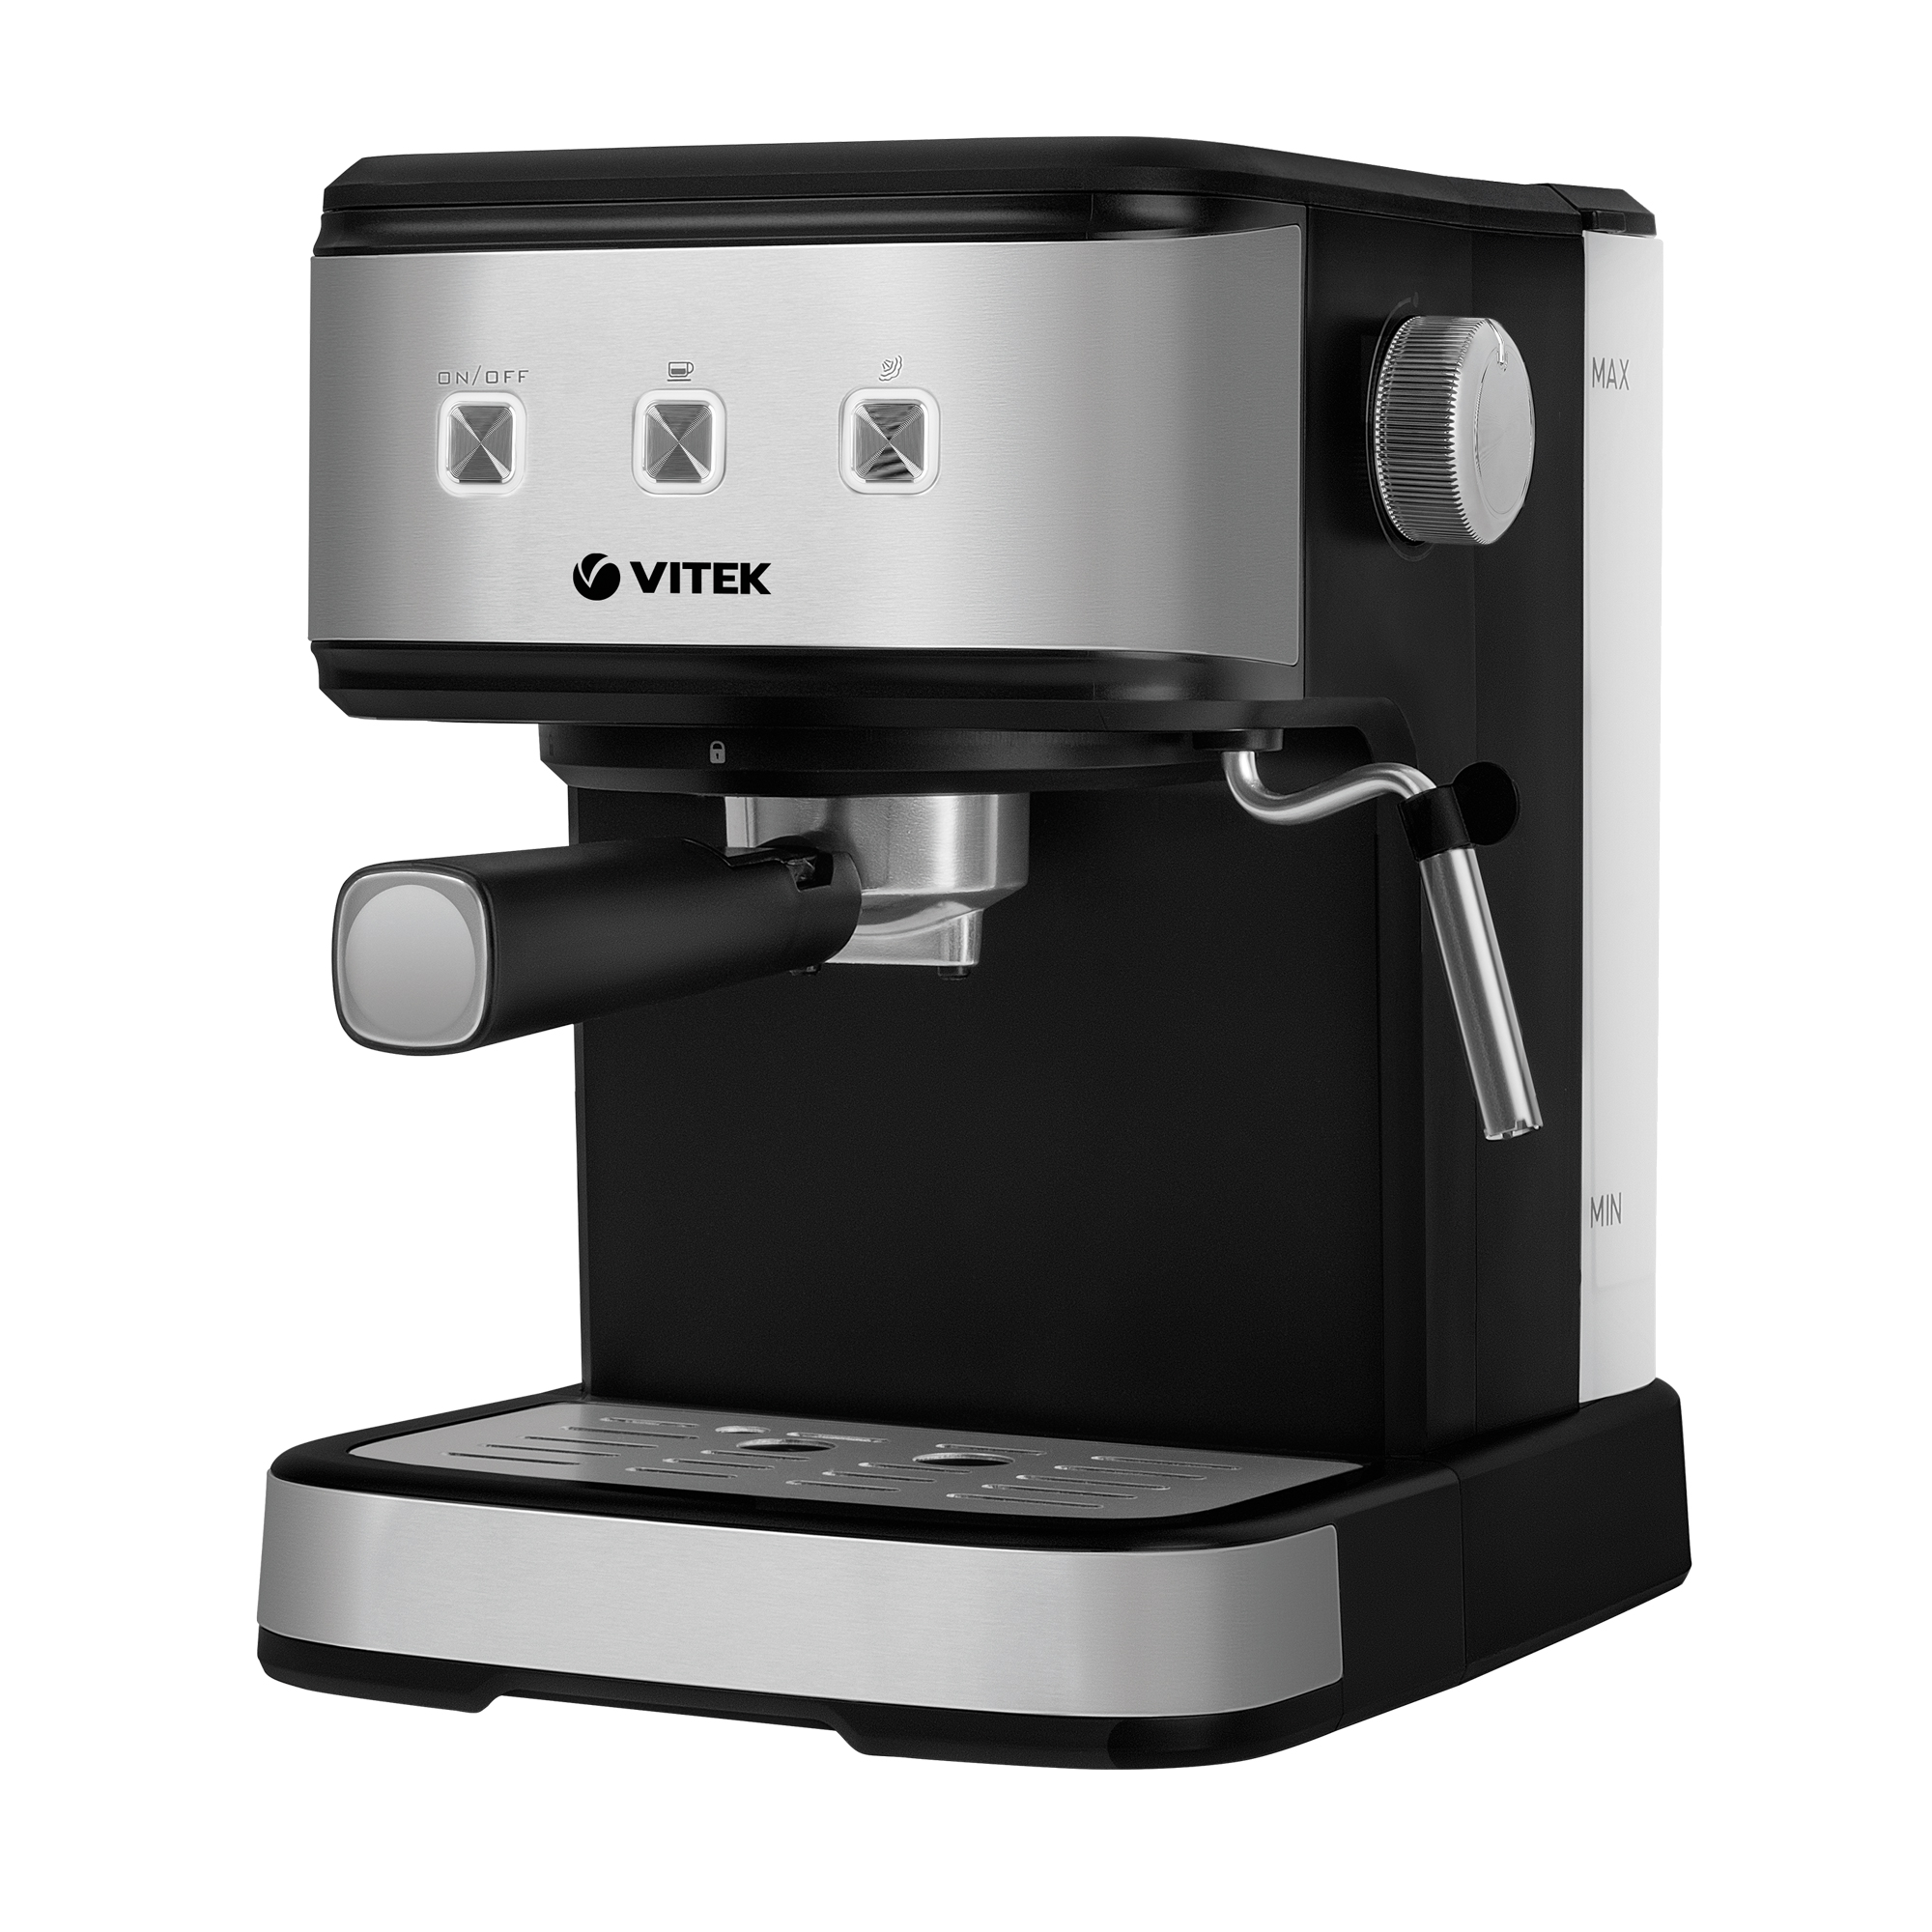 Рожковая кофеварка VITEK VT-8471 серый, черный рожковая кофеварка vitek vt 1517 bn brown